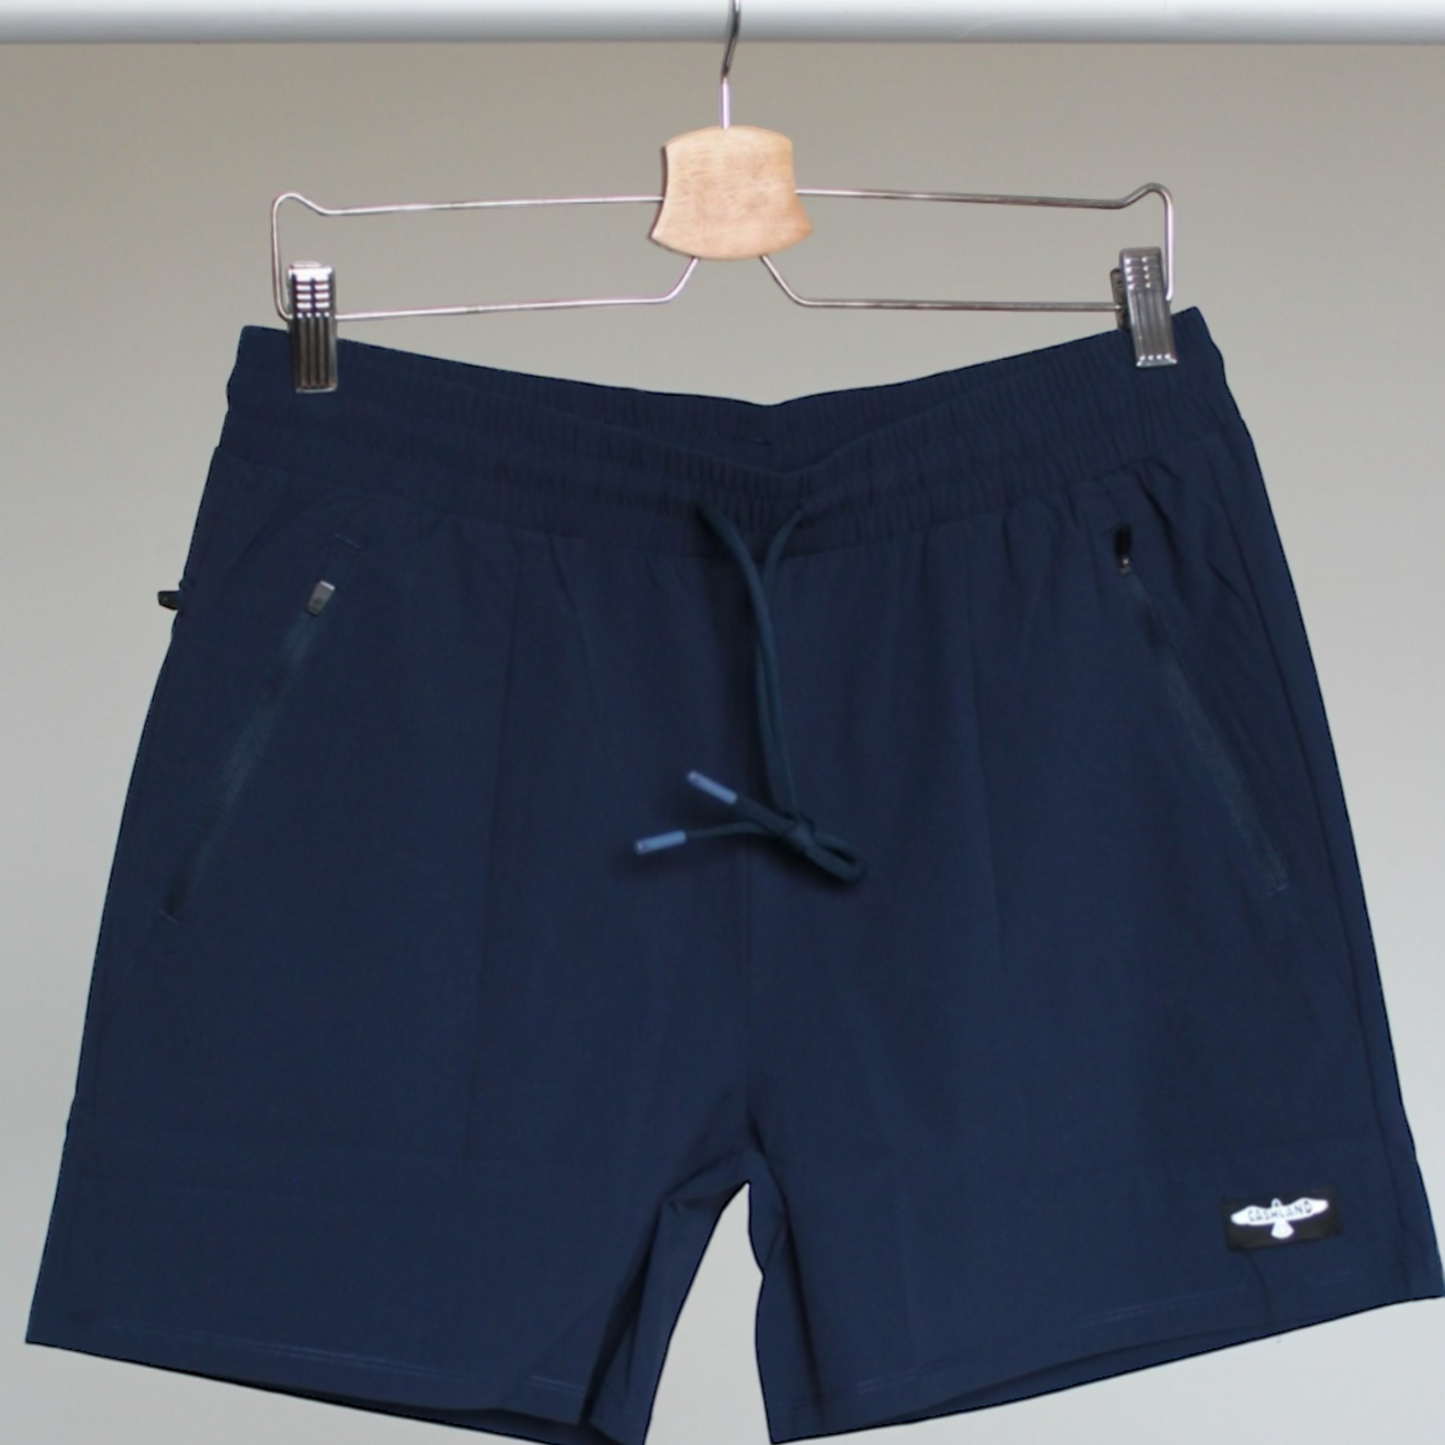 Surge Shorts : Navy